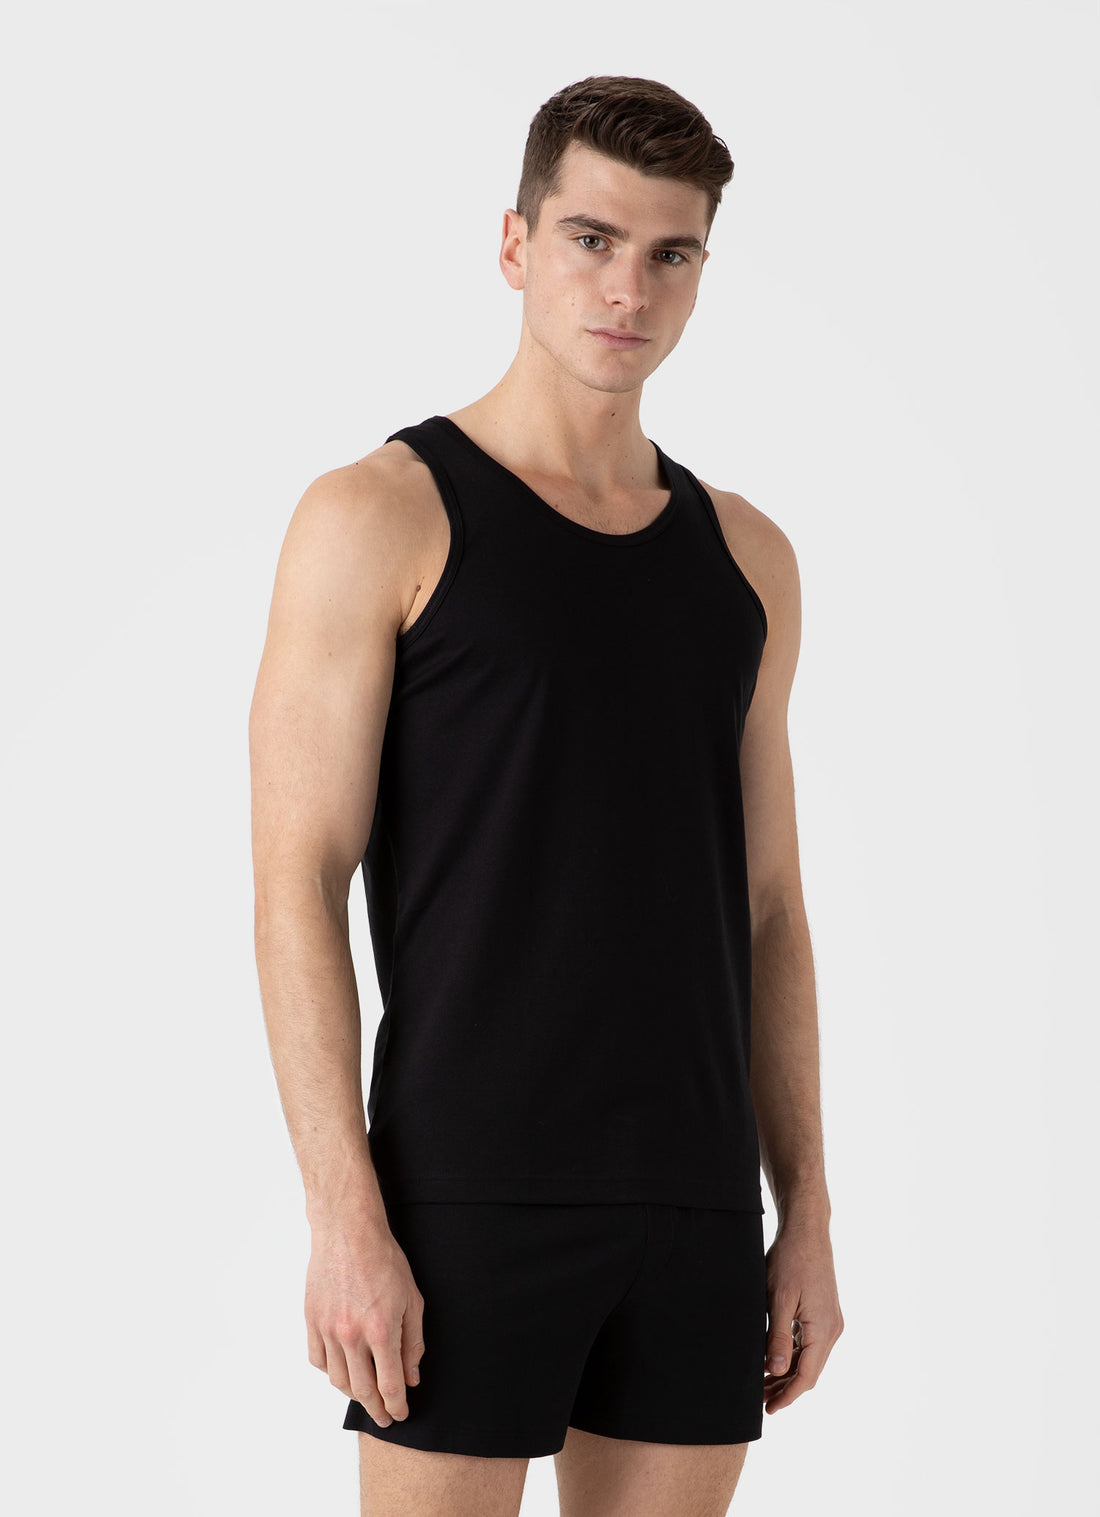 Men's Superfine Cotton Underwear Vest in Black